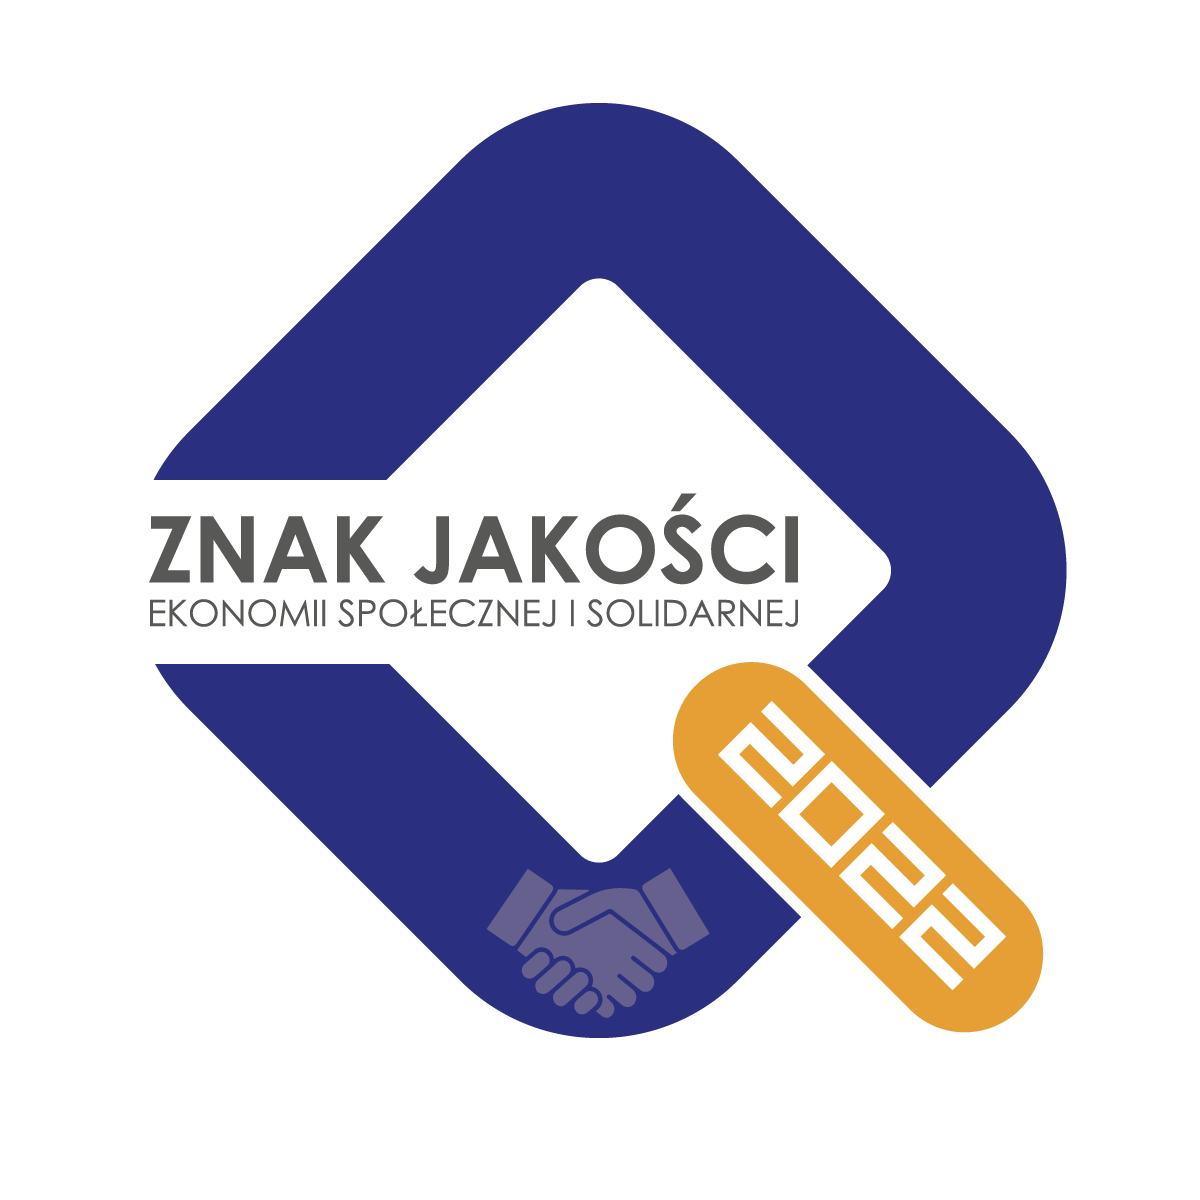 You are currently viewing Znak Jakości Ekonomii Społecznej i Solidarnej 2022